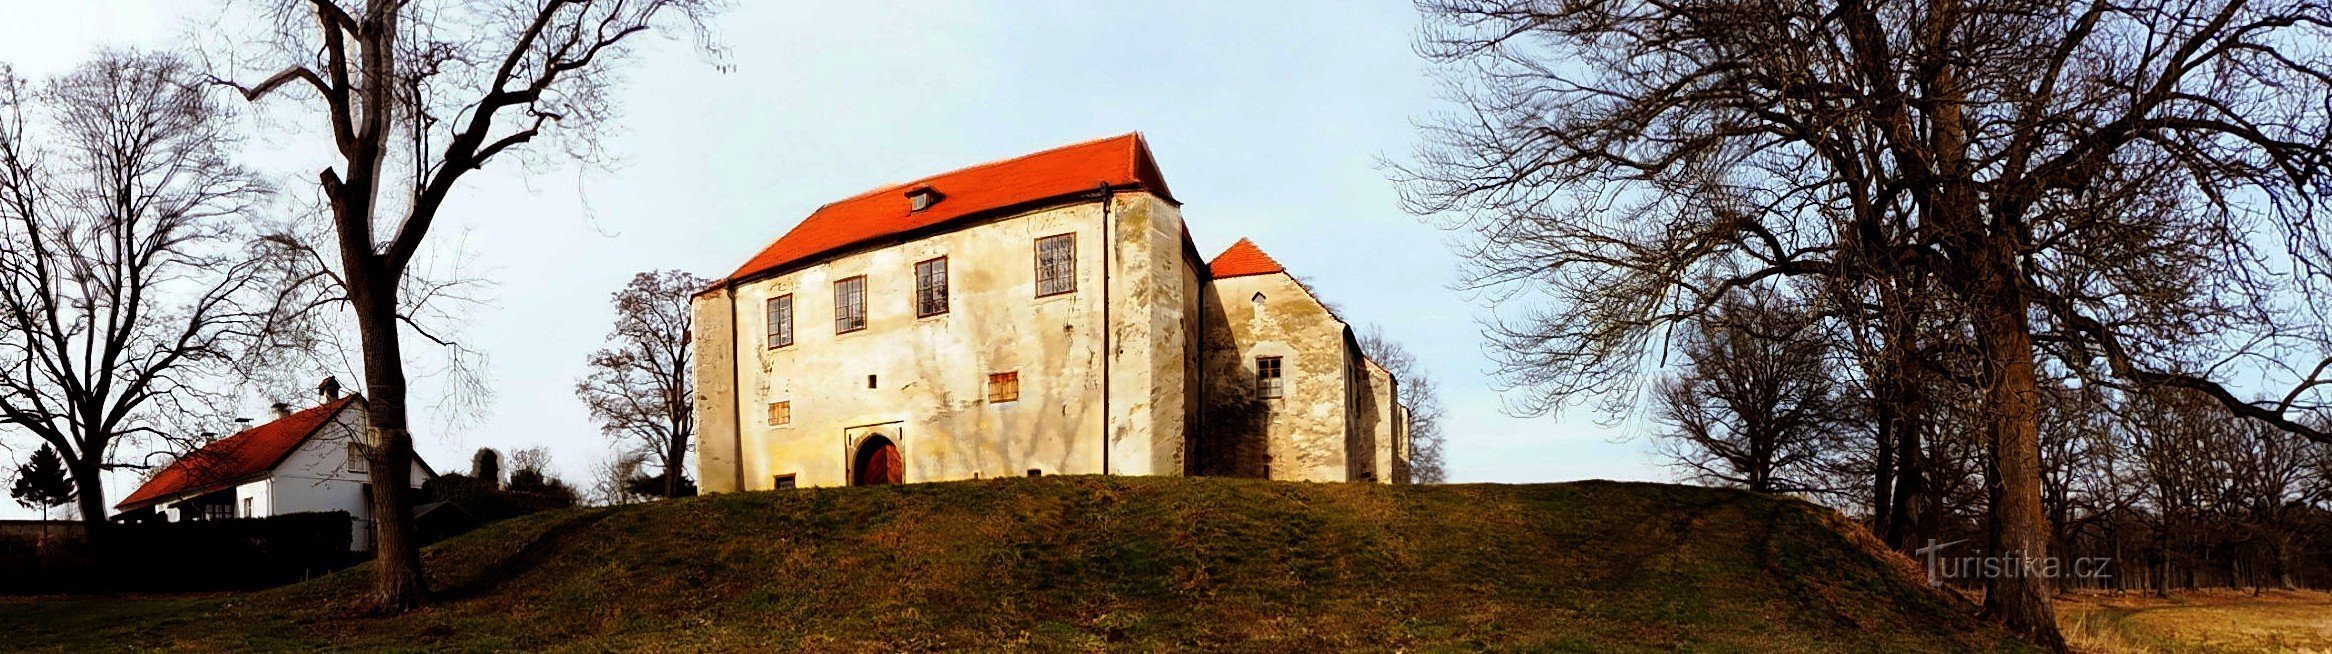 Pháo đài Gothic Zuknštejn